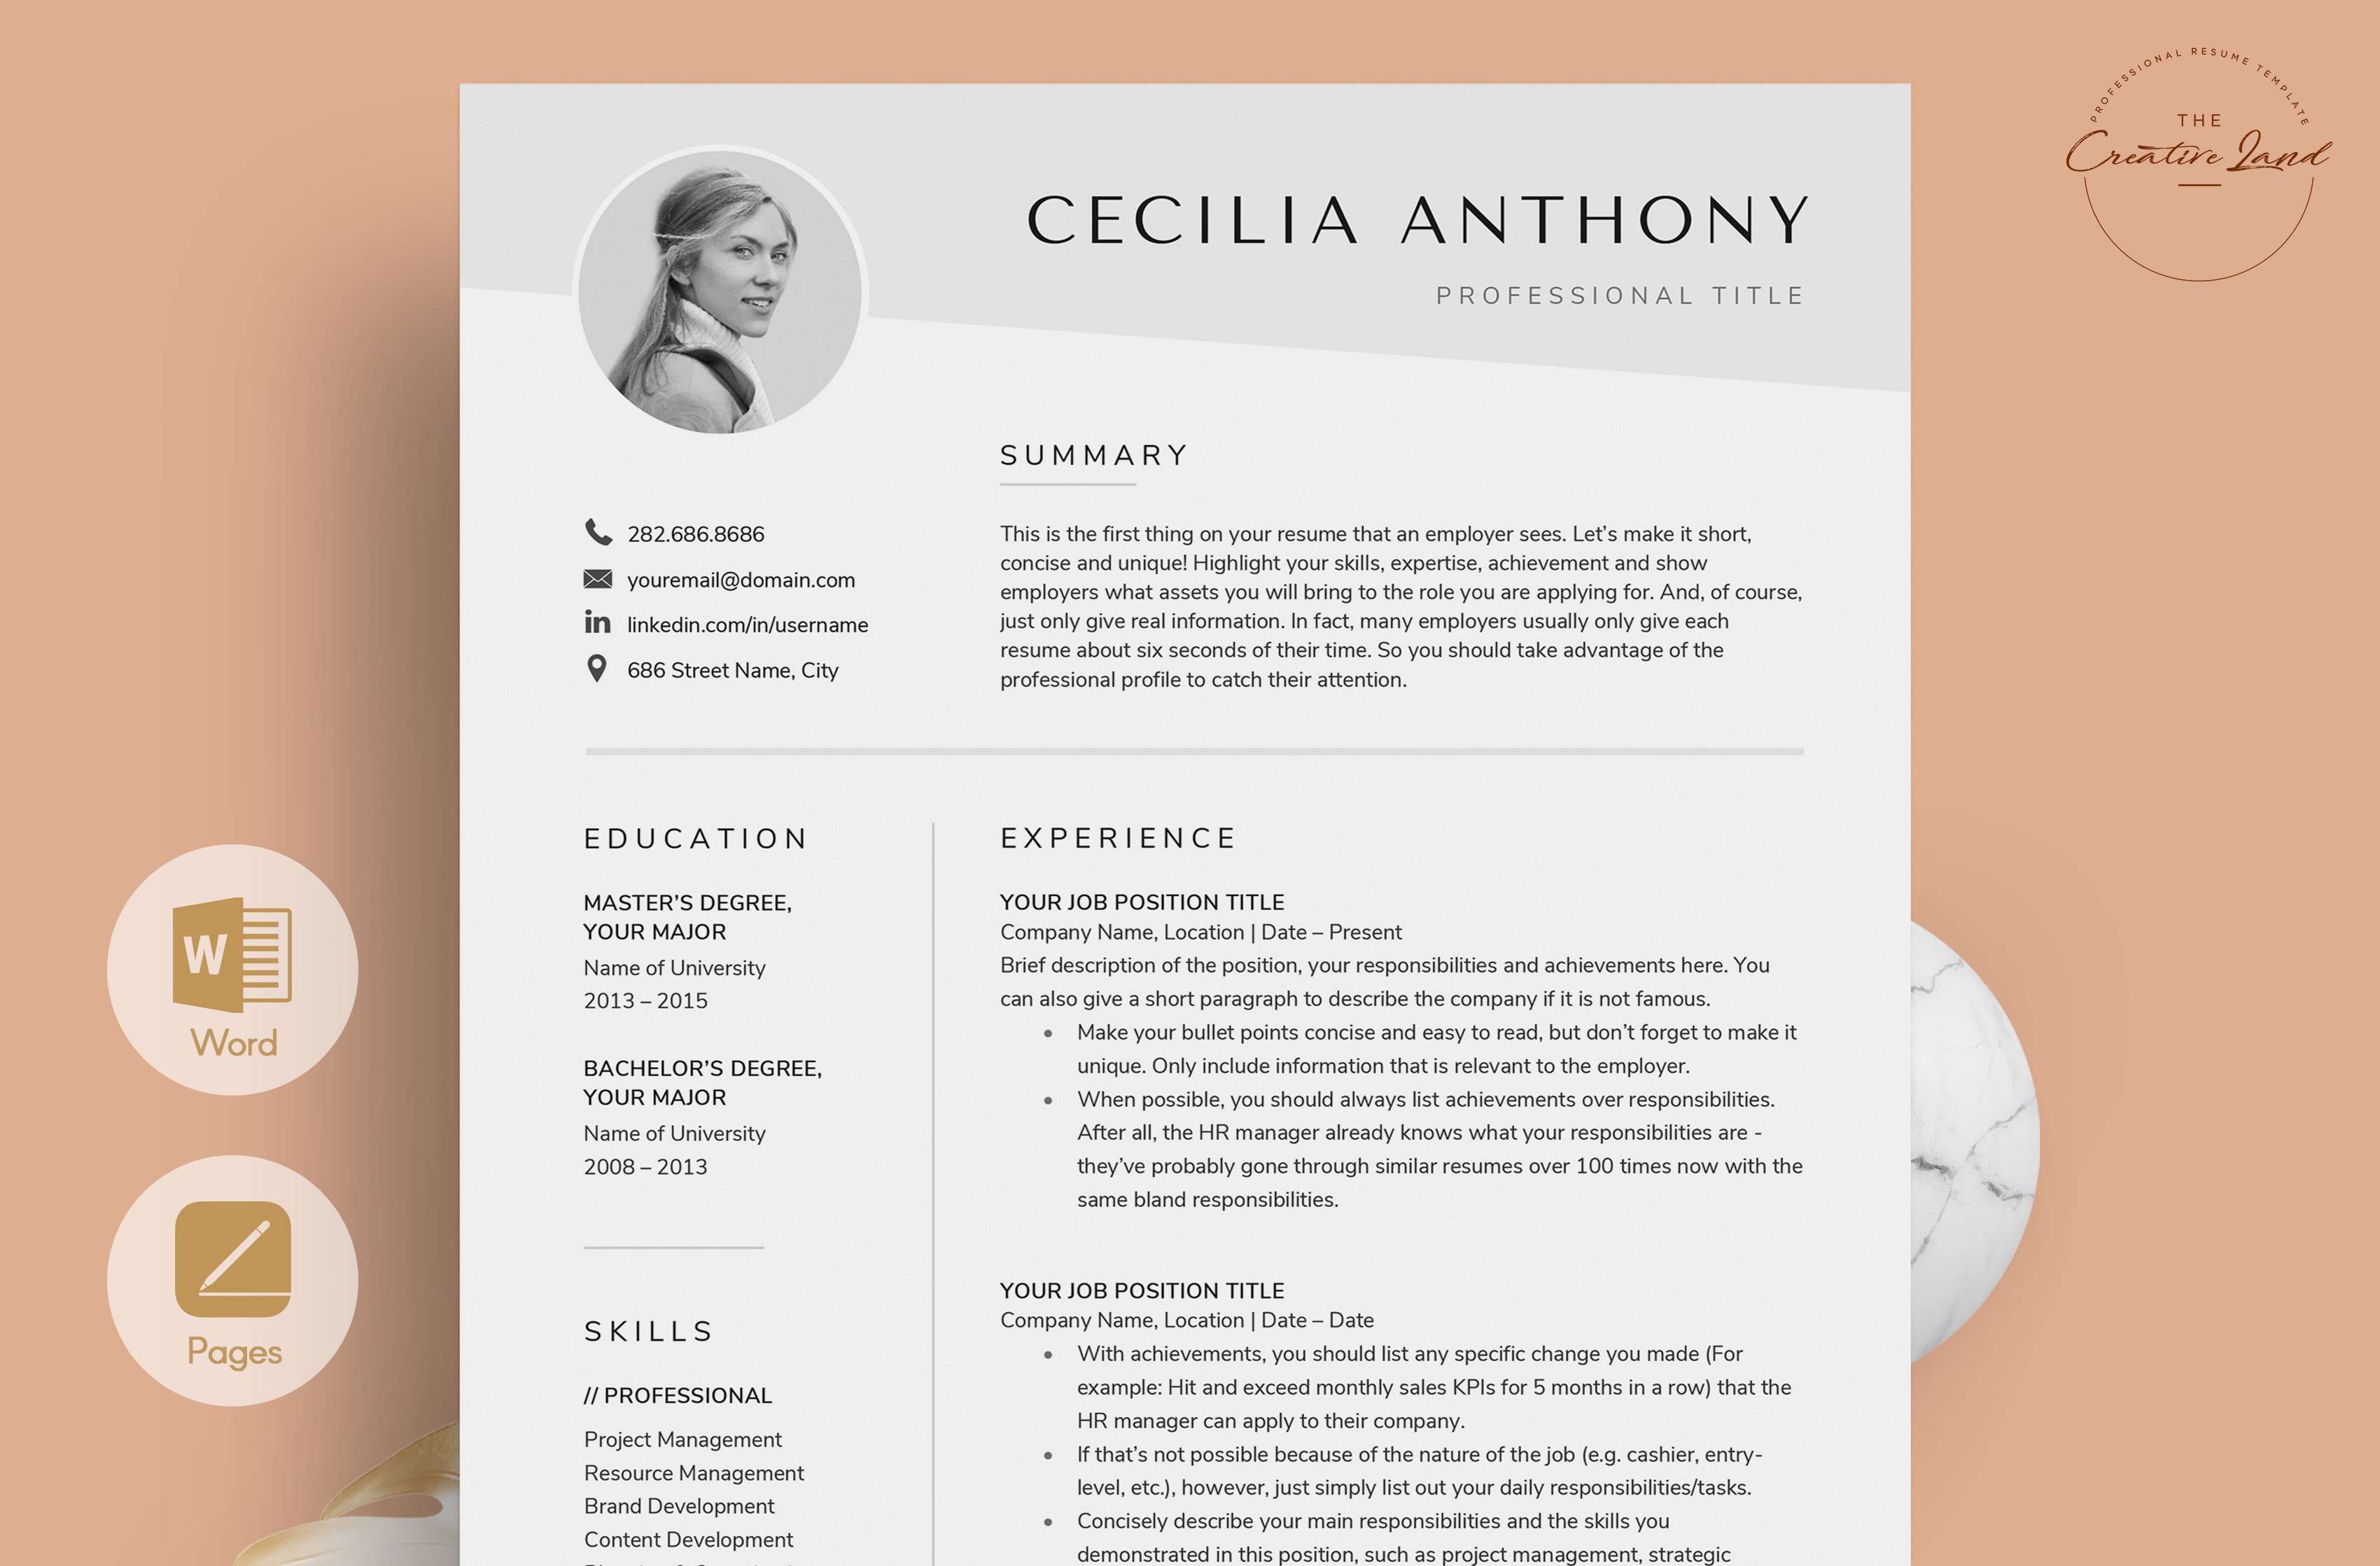 Resume/CV - The Cecilia cover image.